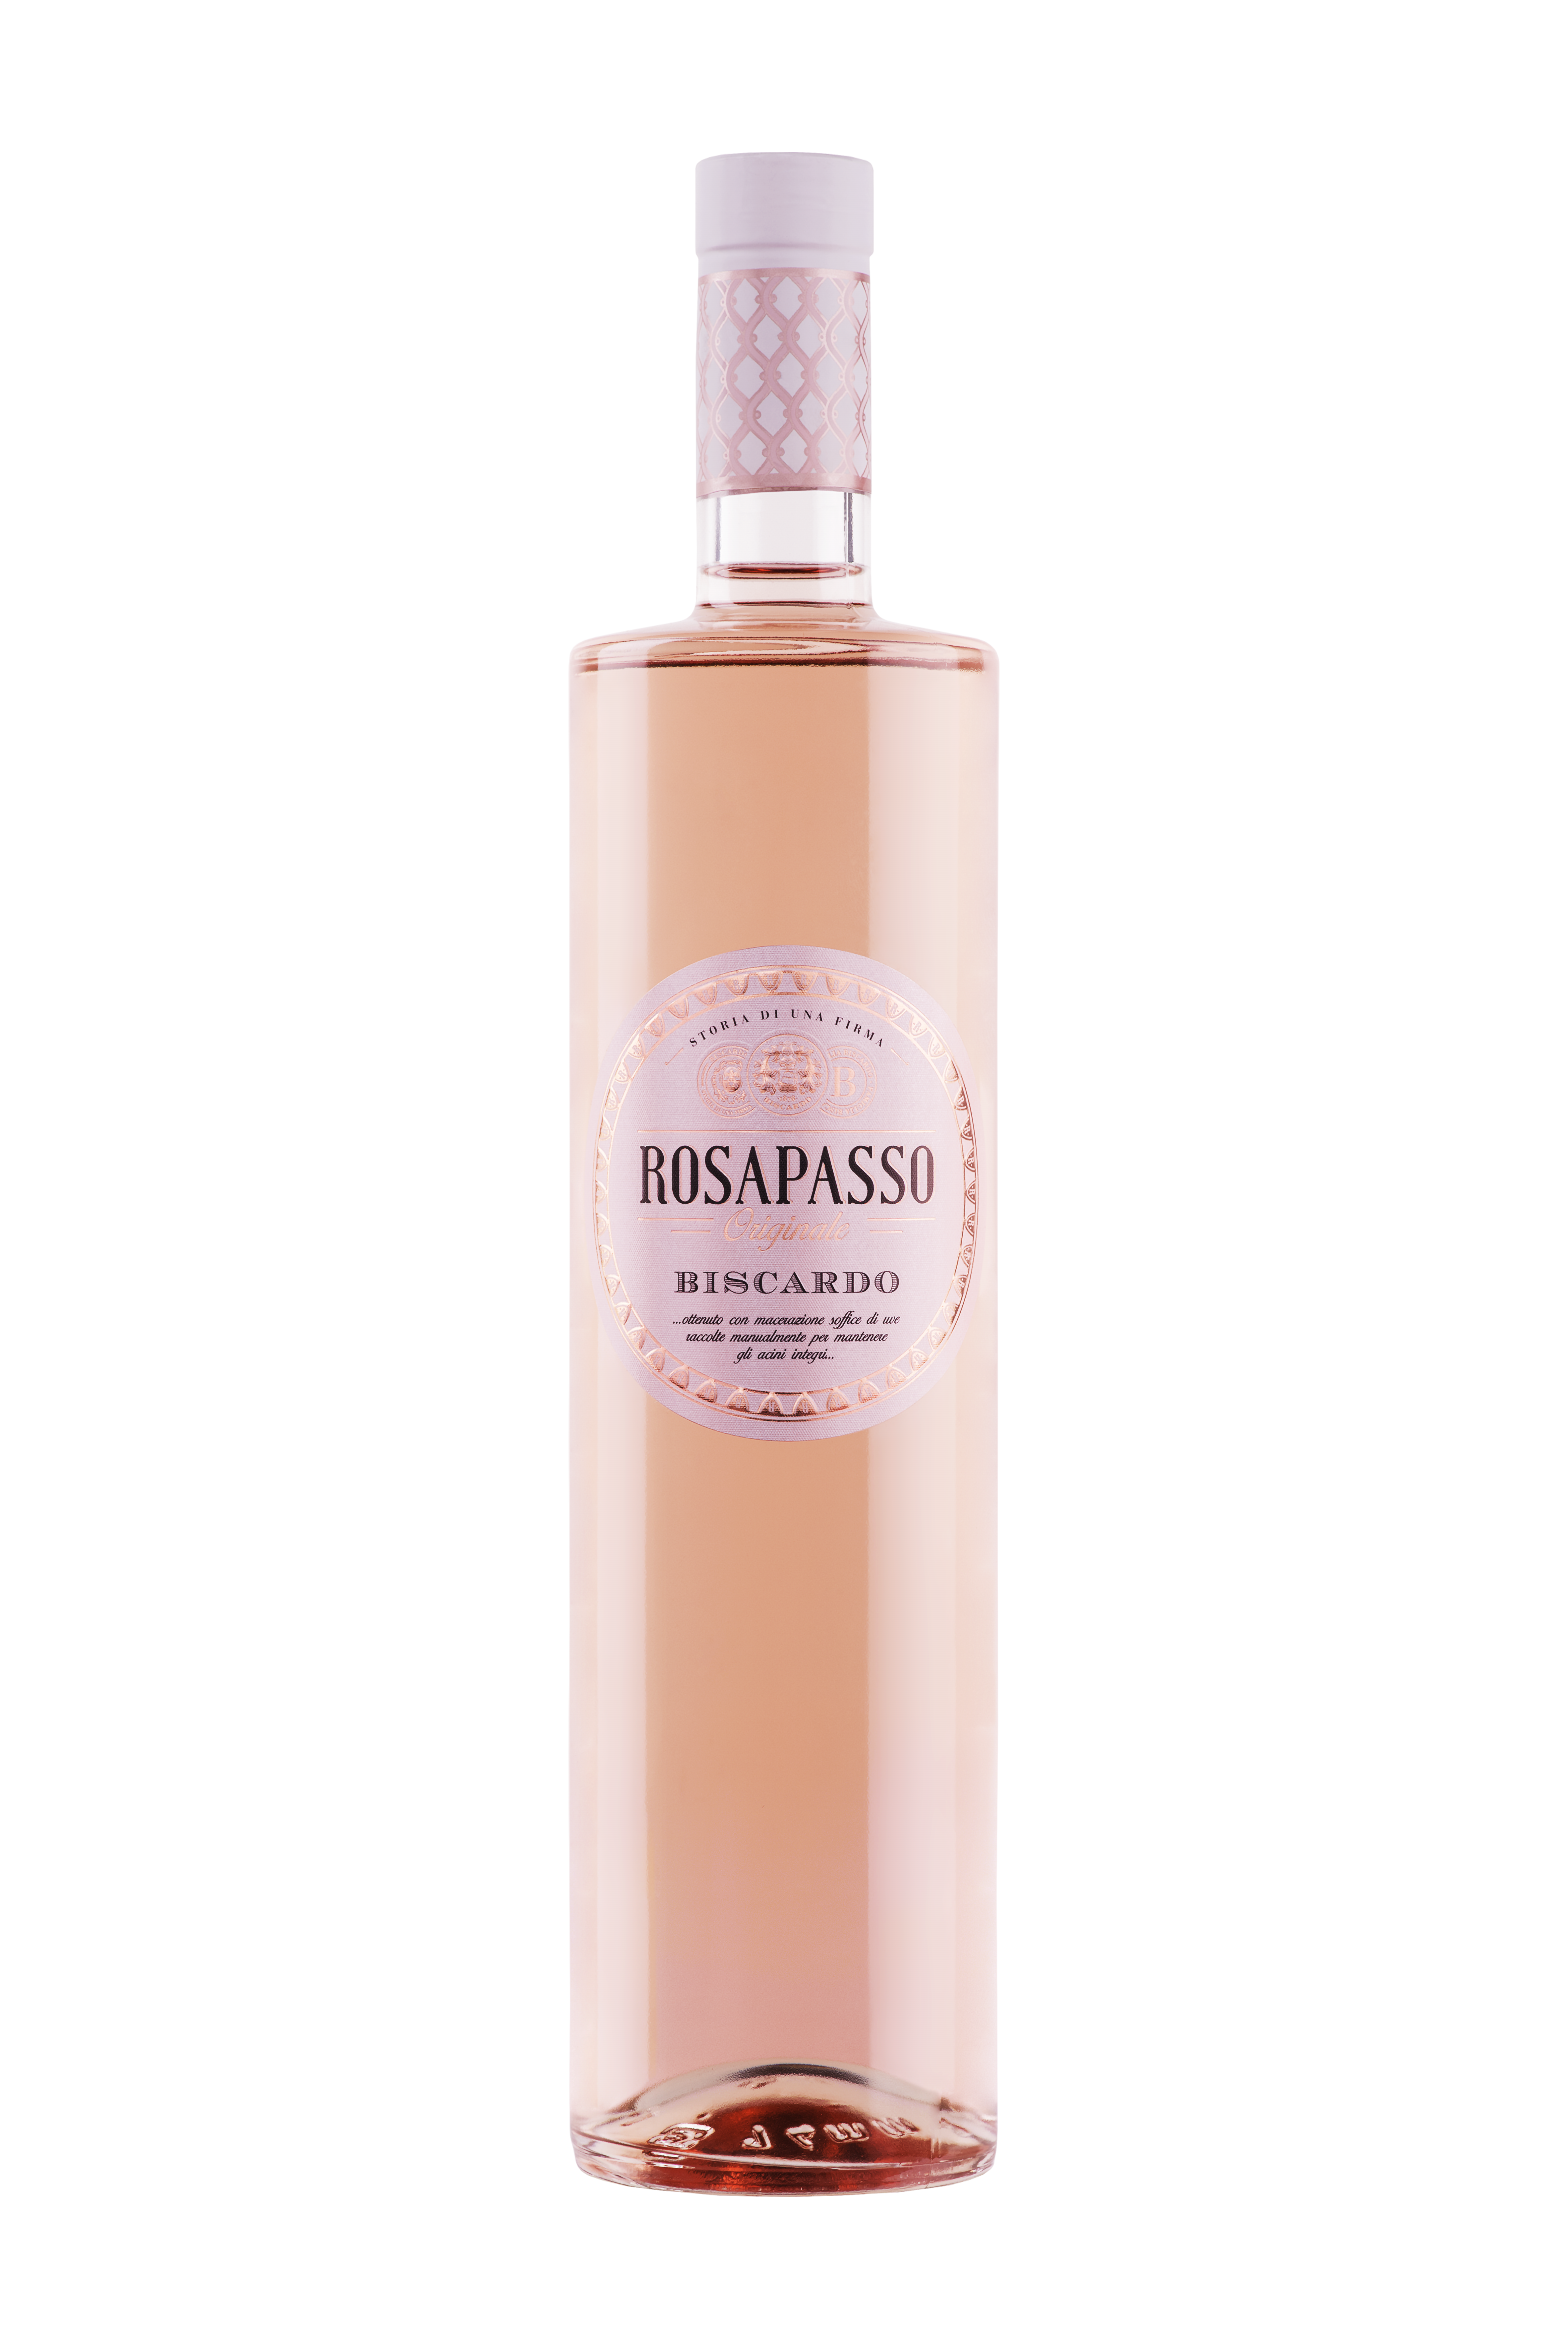 Růžové ROSAPASSO Pinot Nero, Veneto, IGT, Vinařství Biscardo, Veneto, 12,5%vol. 0,75L